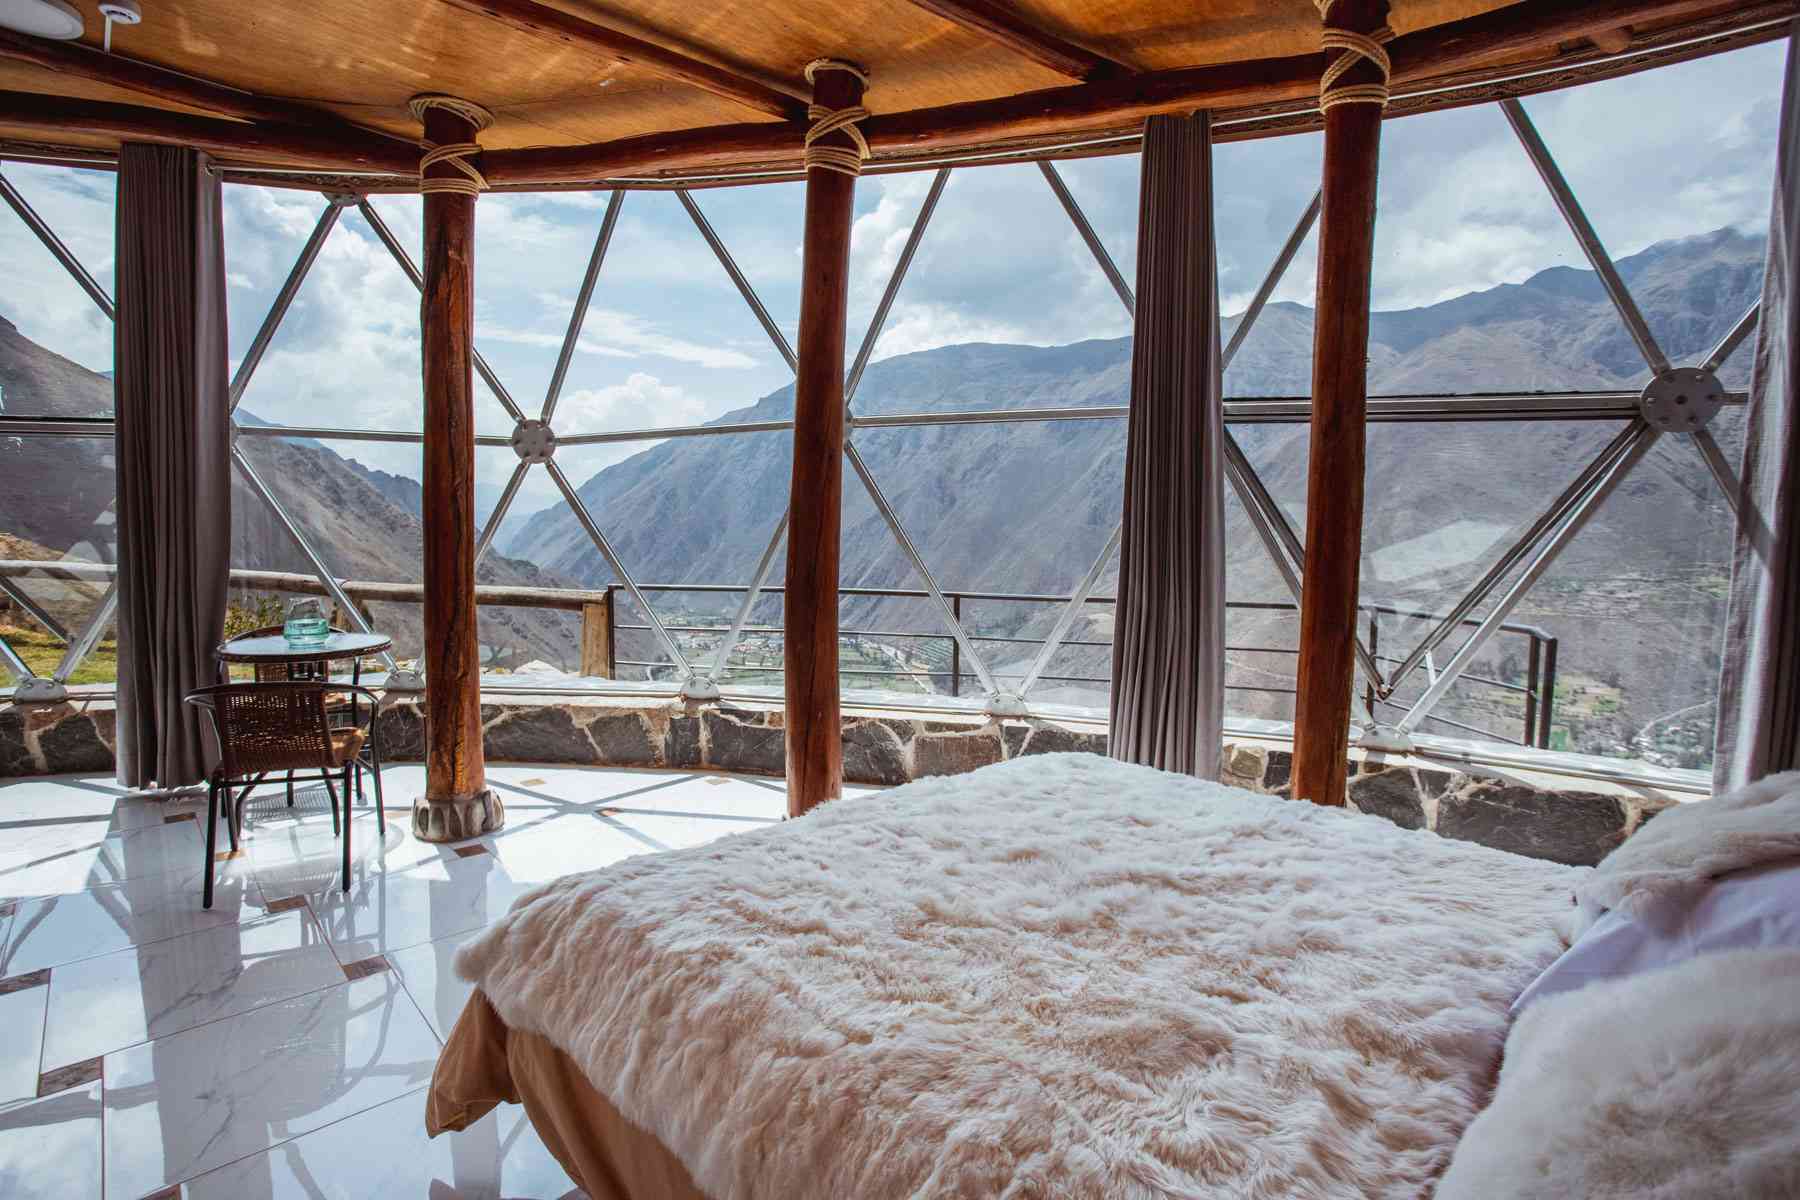 Hôtel-boutique de luxe avec une structure en dôme transparent niché dans les montagnes du Pérou.  Vues panoramiques depuis l'intérieur de la chambre et du restaurant